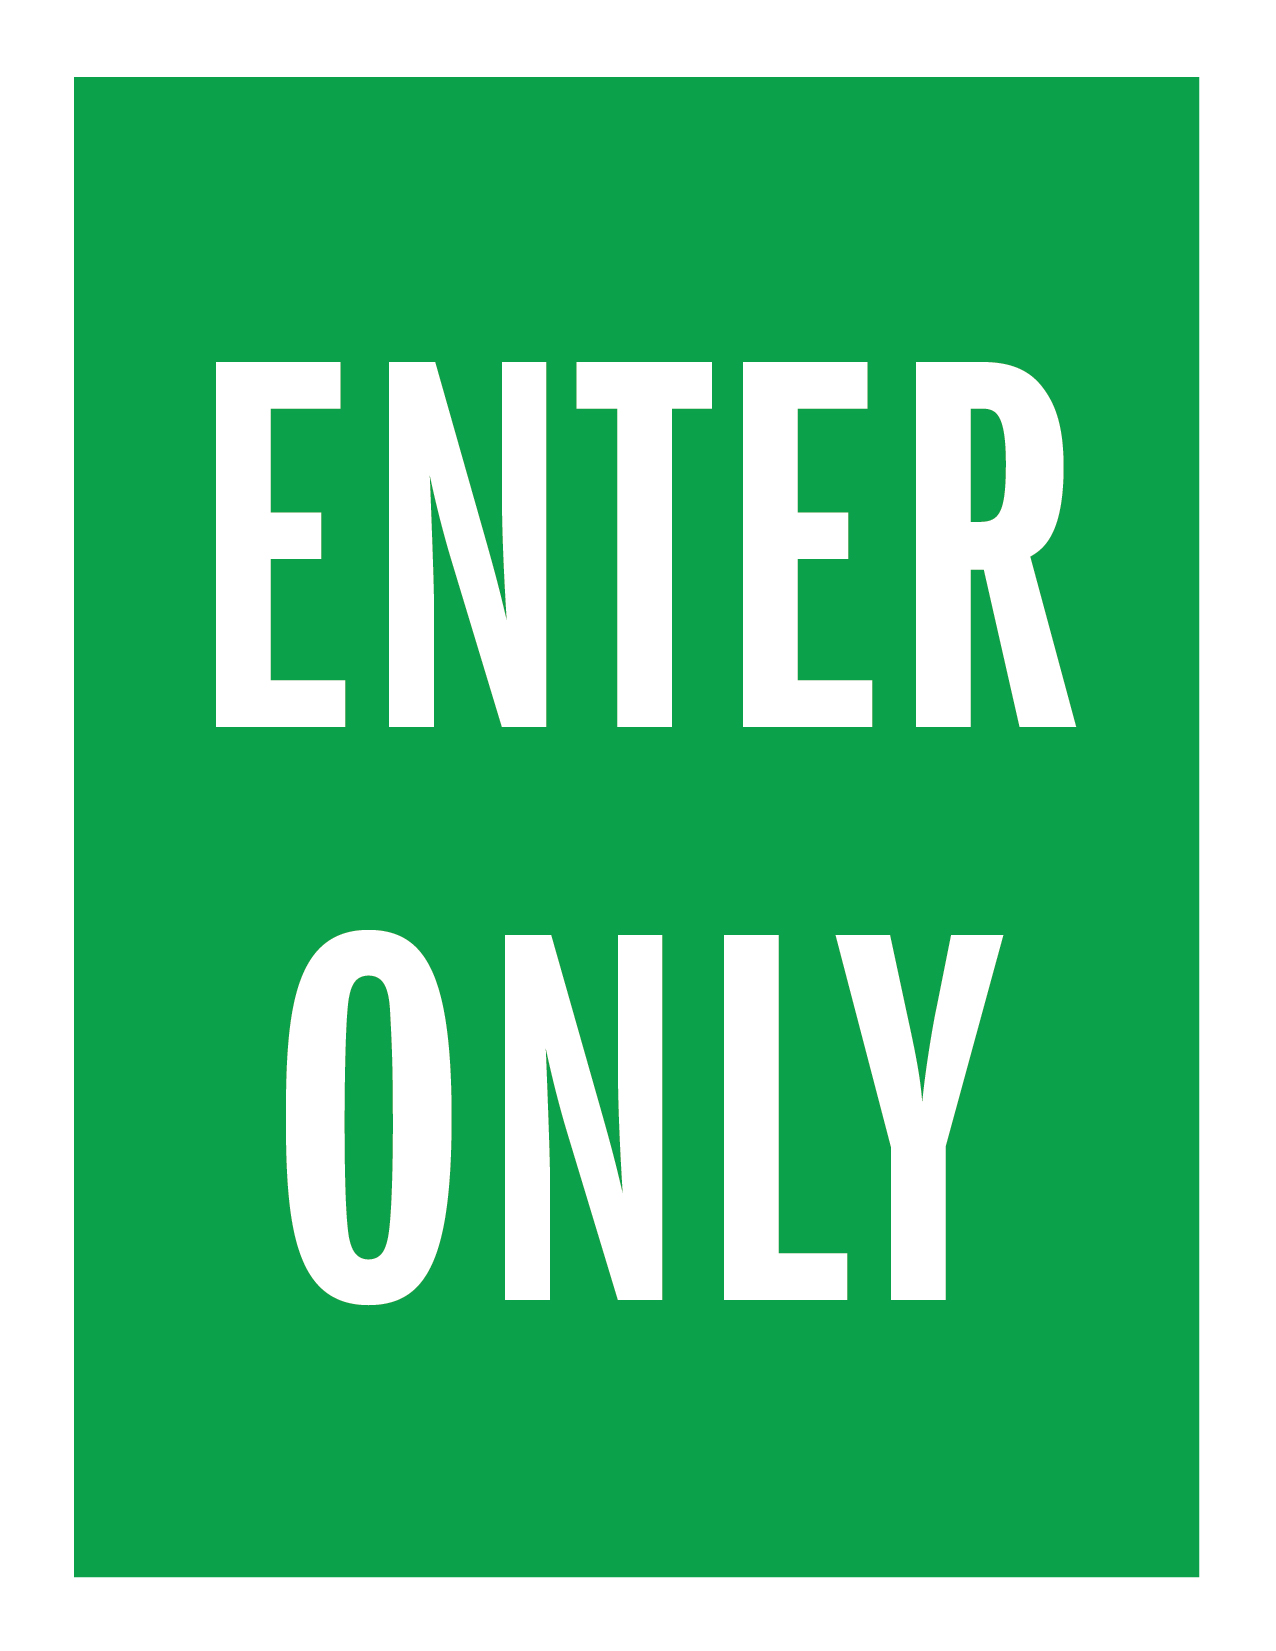 enter only letter-size sign